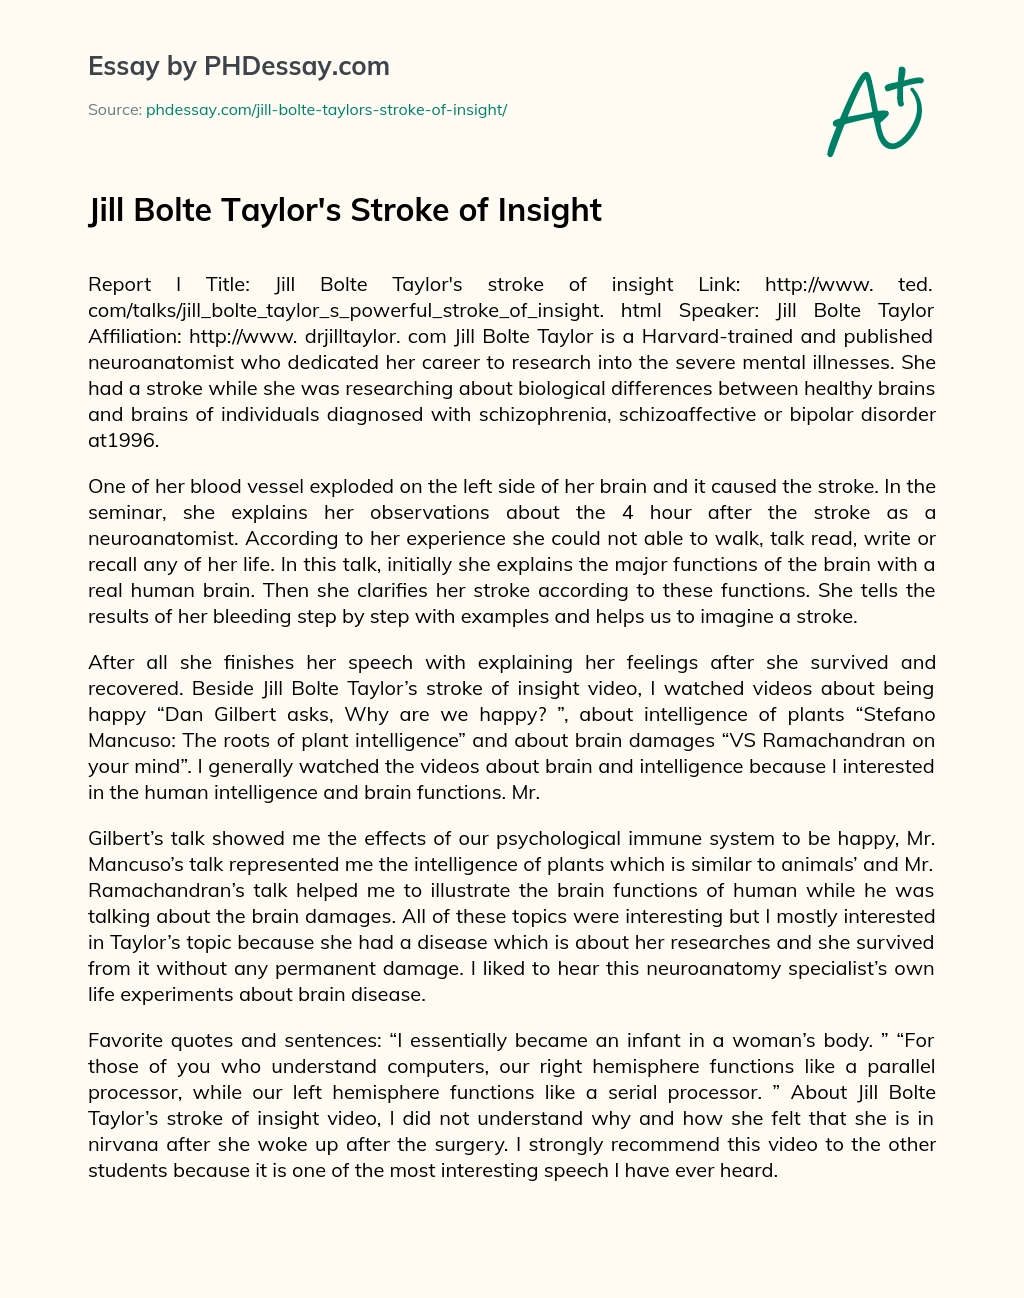 Jill Bolte Taylor’s Stroke of Insight essay